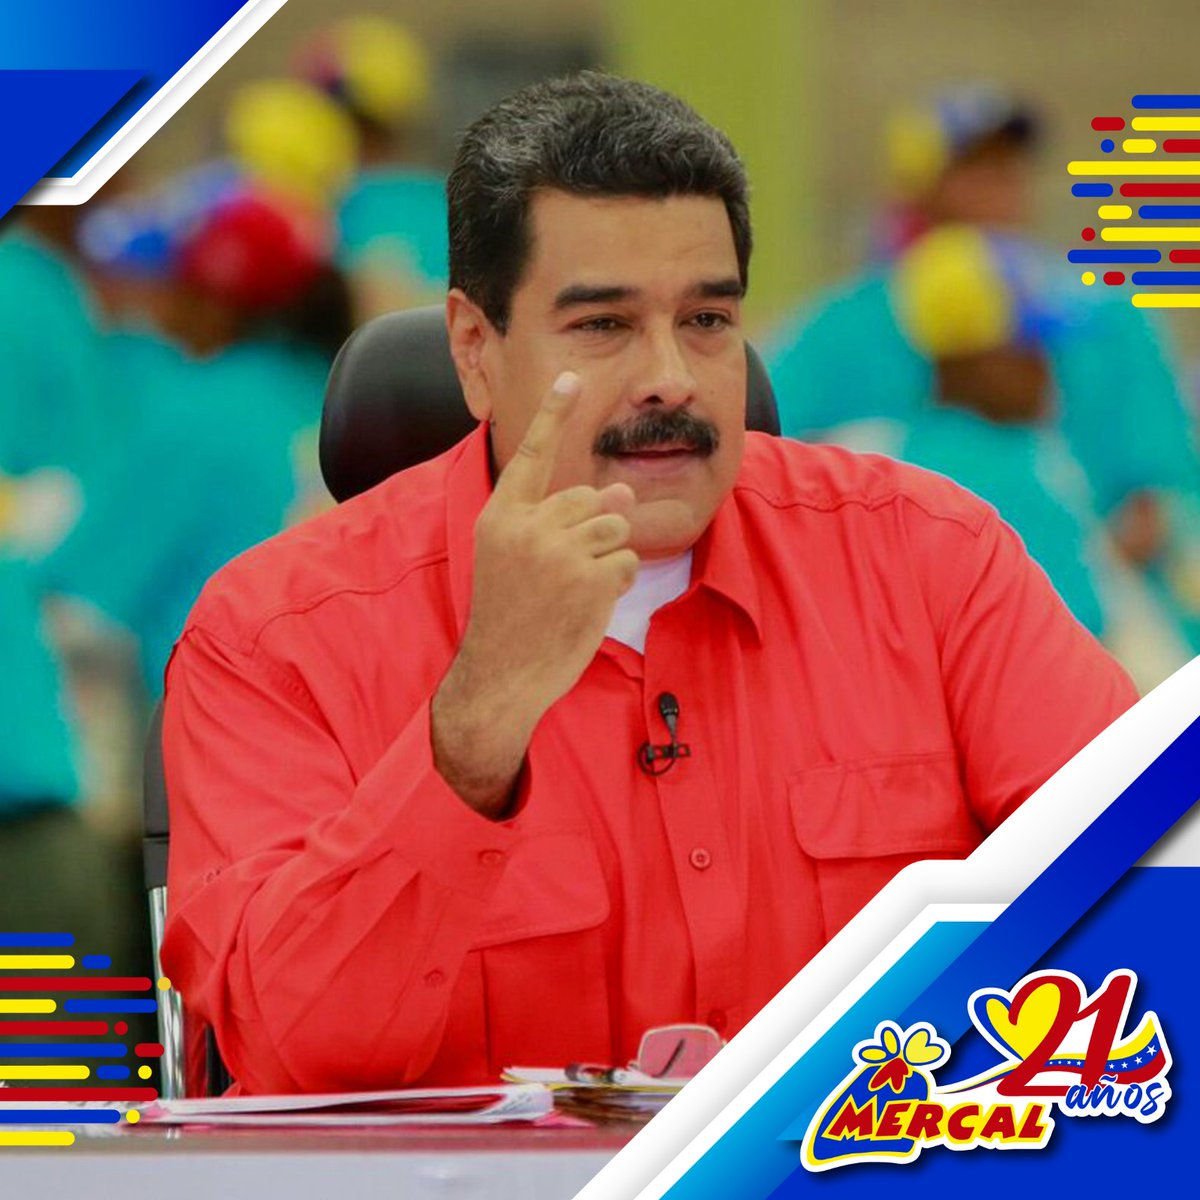 #MaduroEsElDeChávez